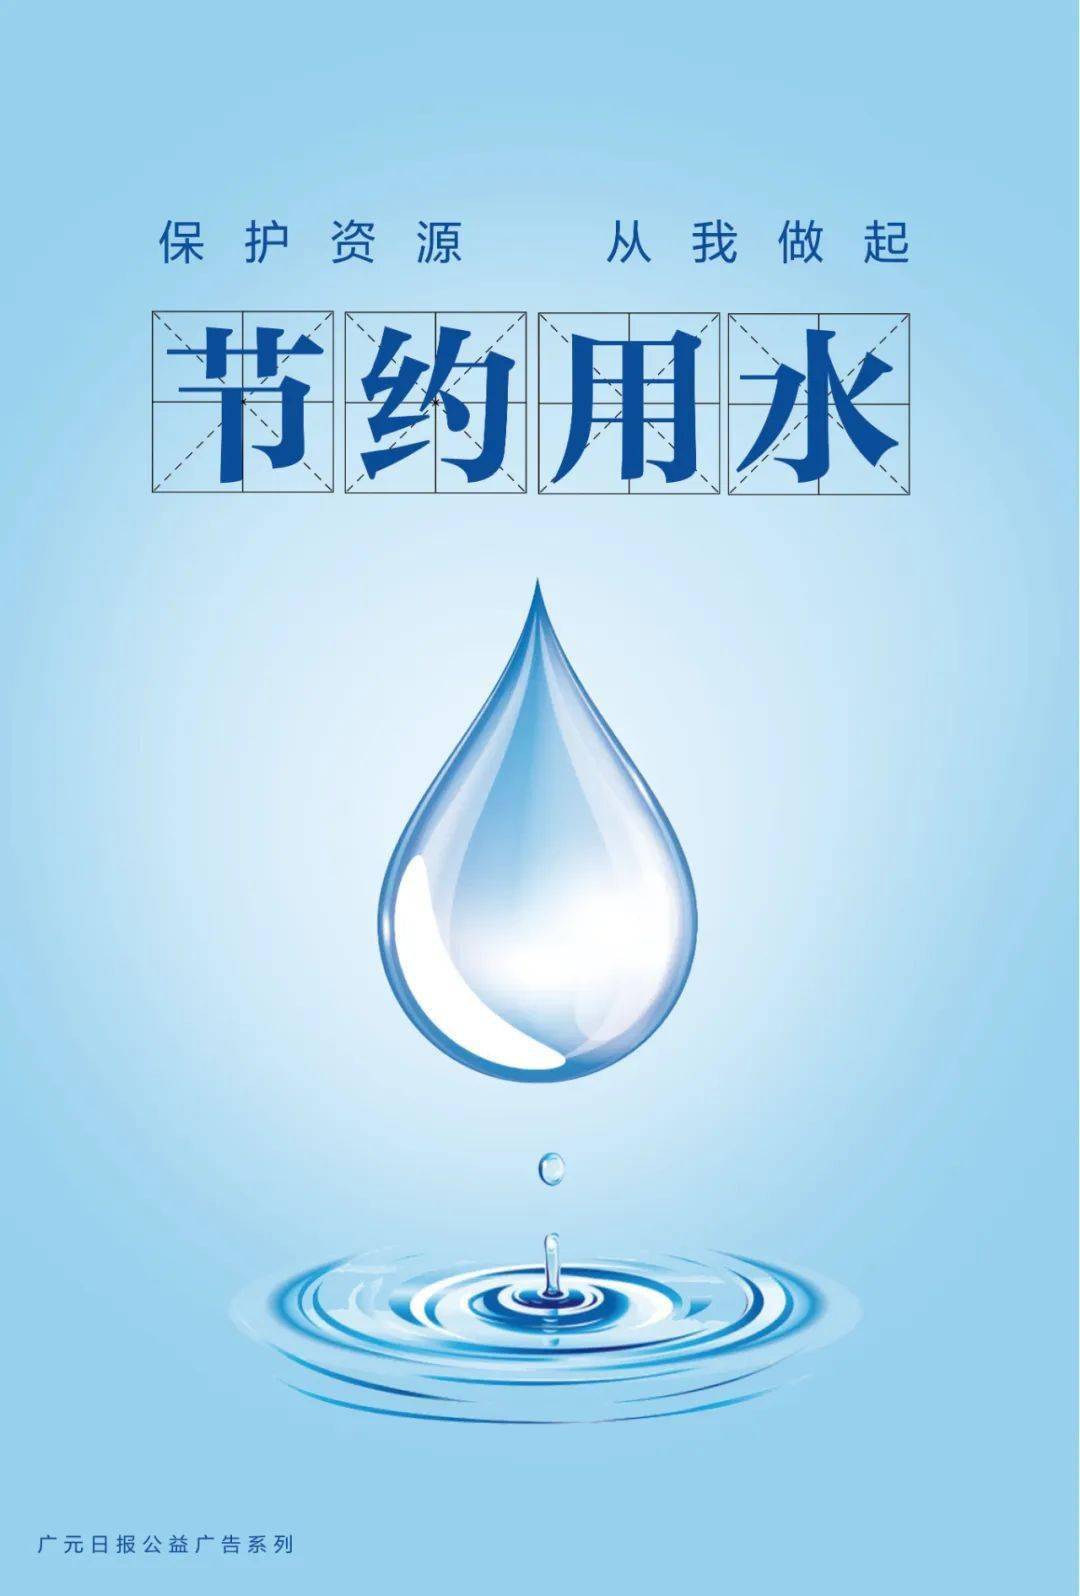 【公益广告】节约用水